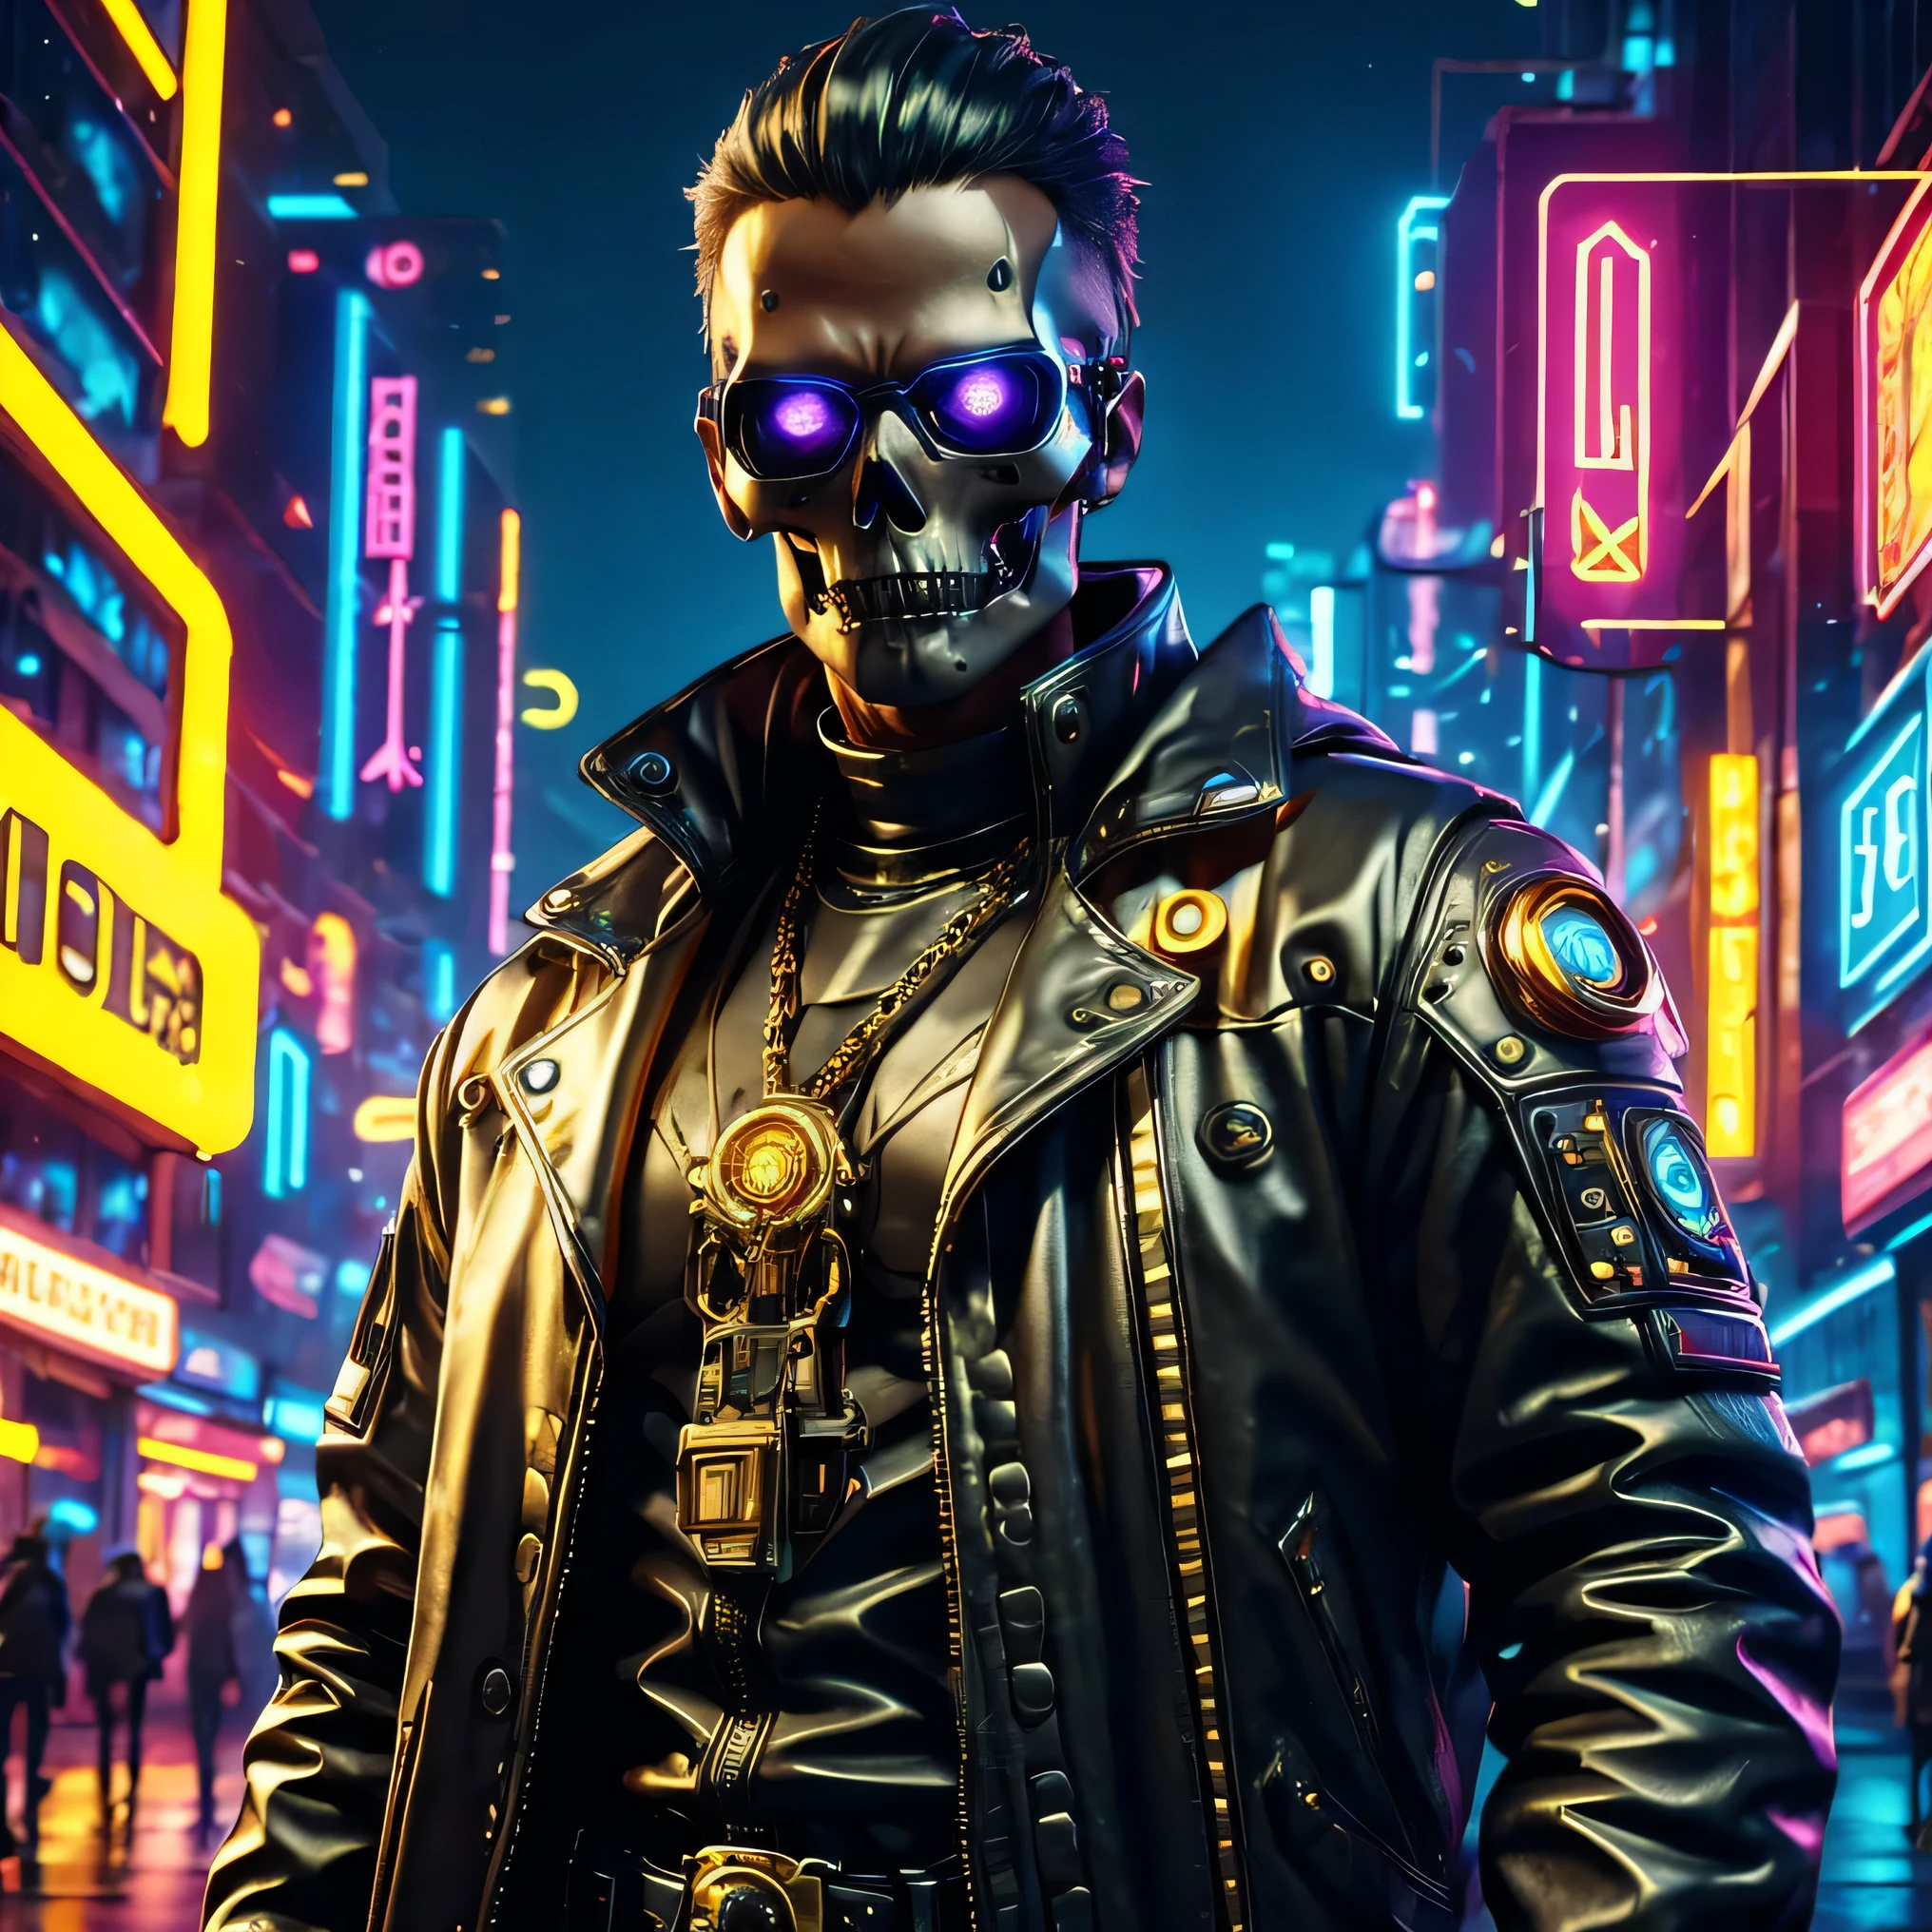 آلة, cyberpunk, معطف جلد أسود, سلسلة ذهب, جمجمة الرأس, عيون عالية الشعاع, صورة عالية الدقة, جسم كامل, خيالي, ألوان نابضة بالحياة, إضاءة ناعمة, 3D, عالية الدقةR, مفصل جدا, عالية الدقة, 8K اصليه, تحفة, خلفية, cyberpunk City, rtx